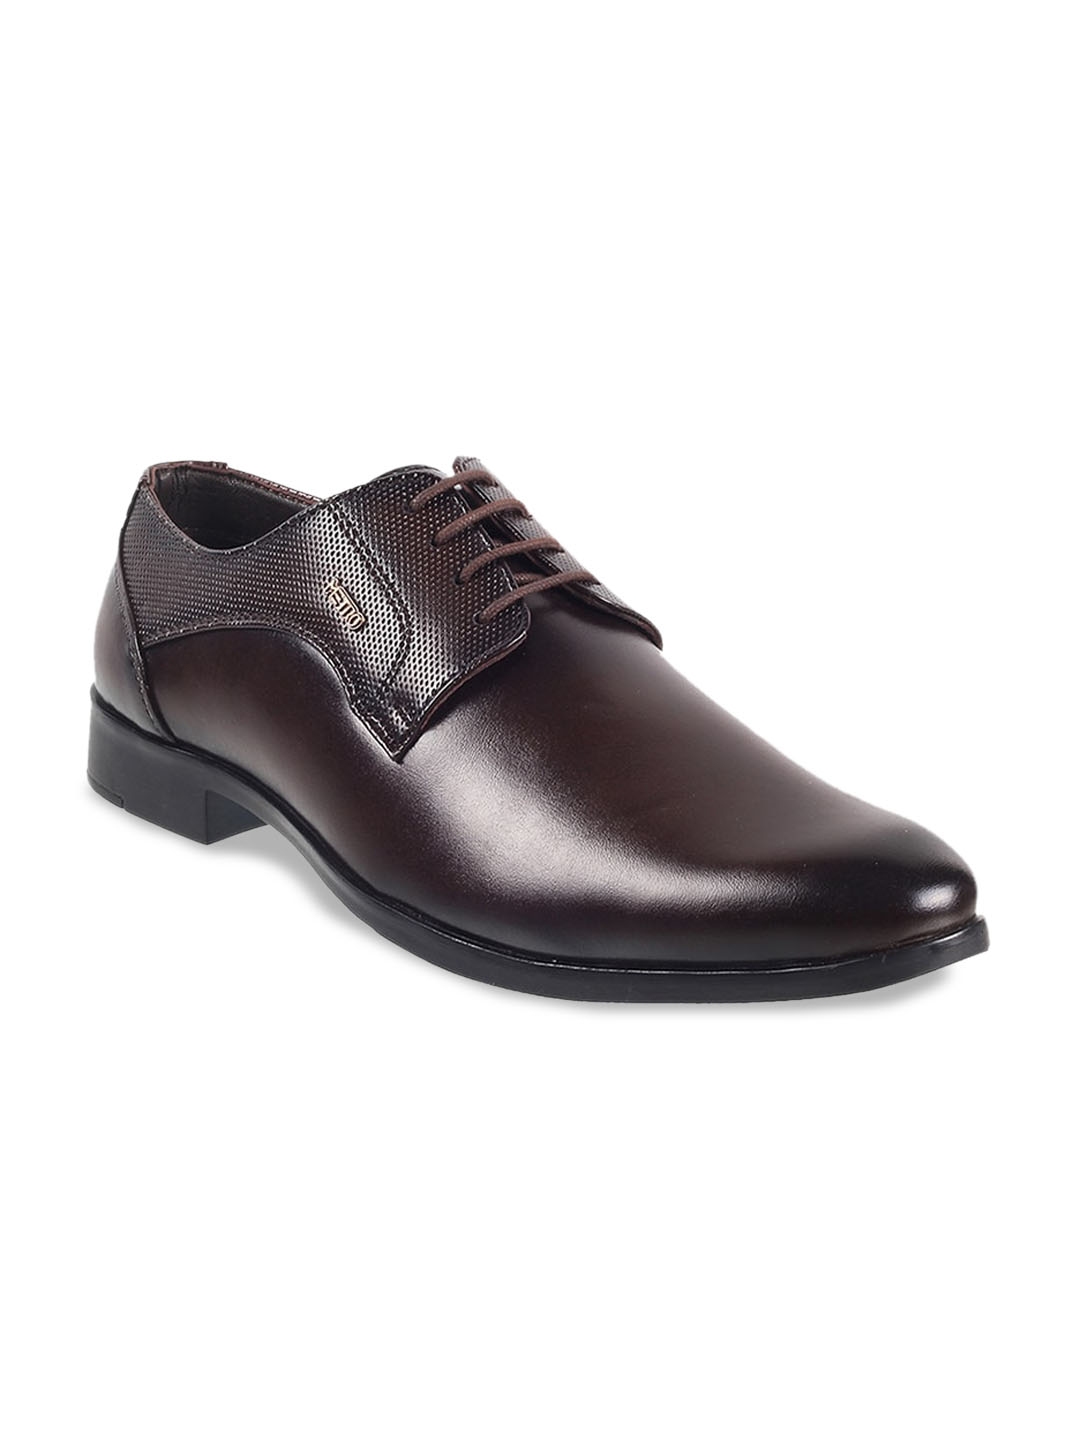 Buy Metro Men Textured Leather Formal Derbys - Formal Shoes for Men ...